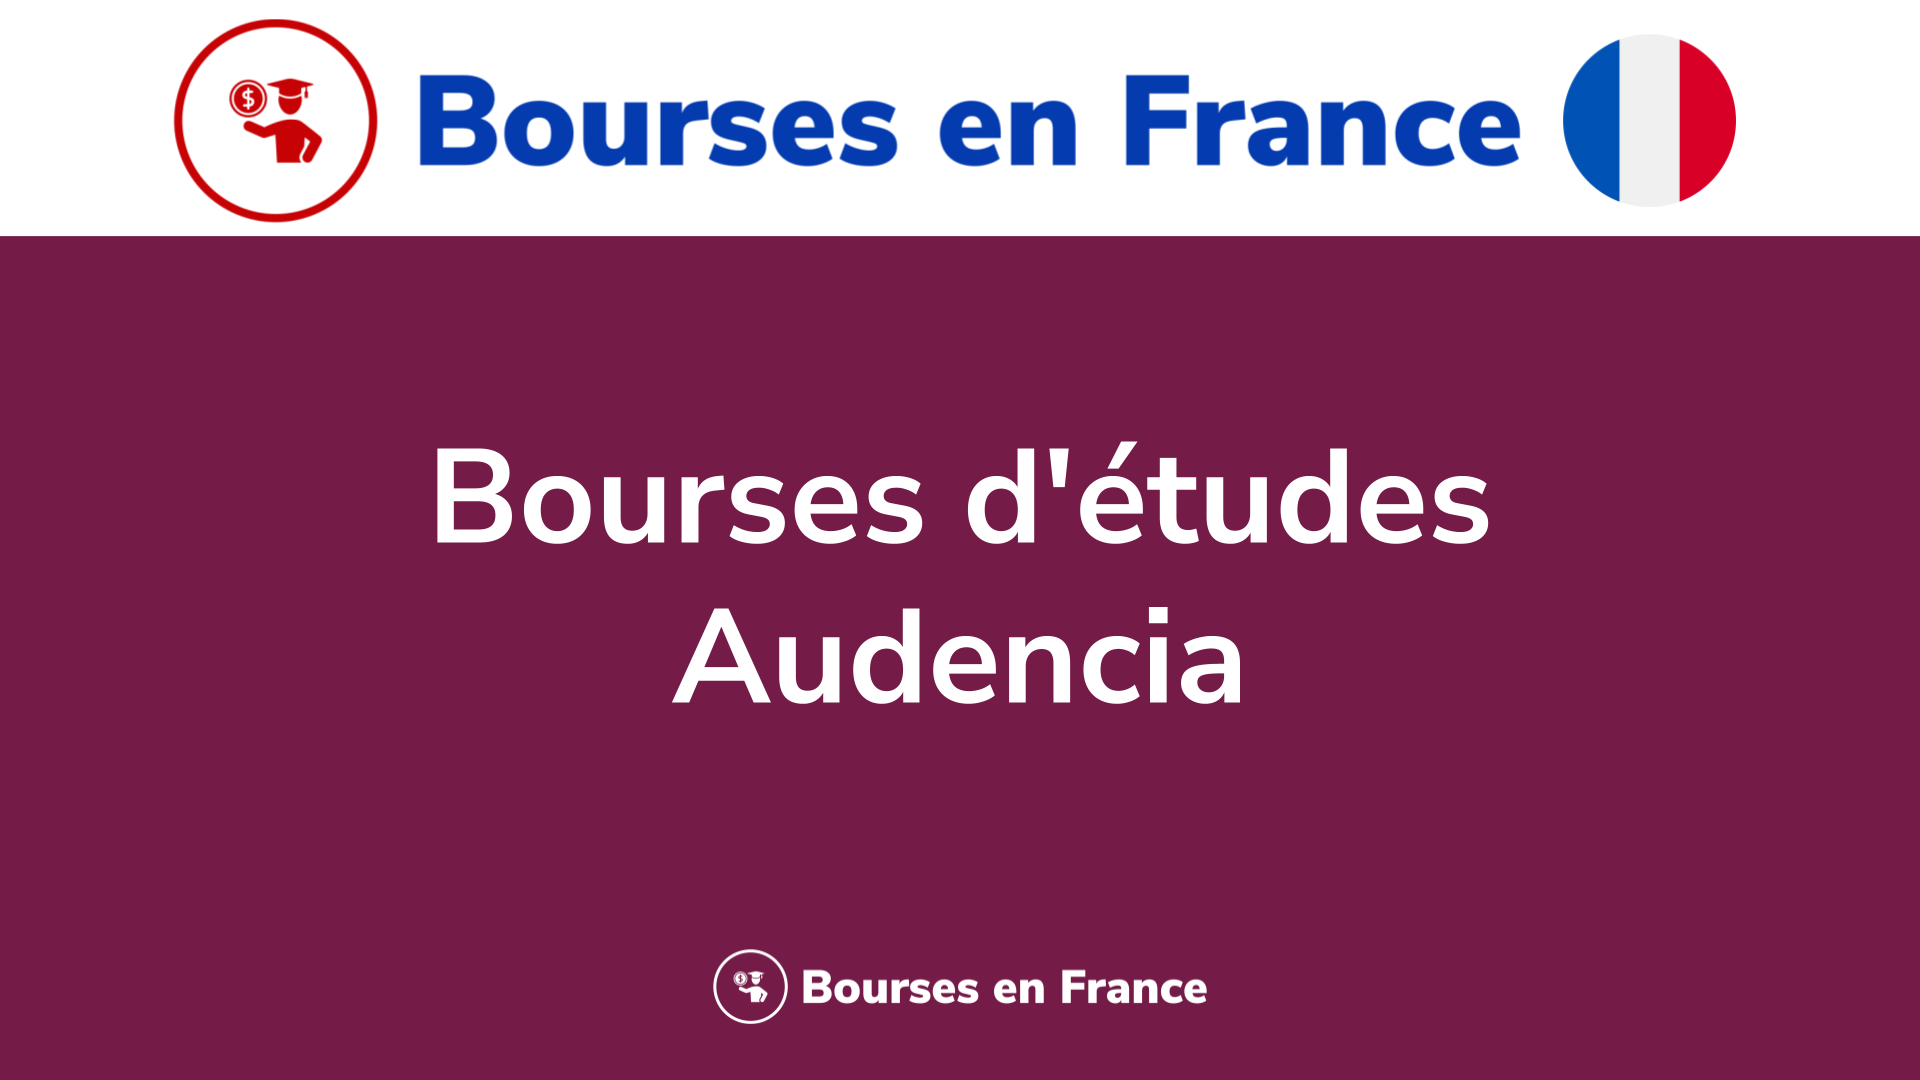 Bourses d'études Audencia